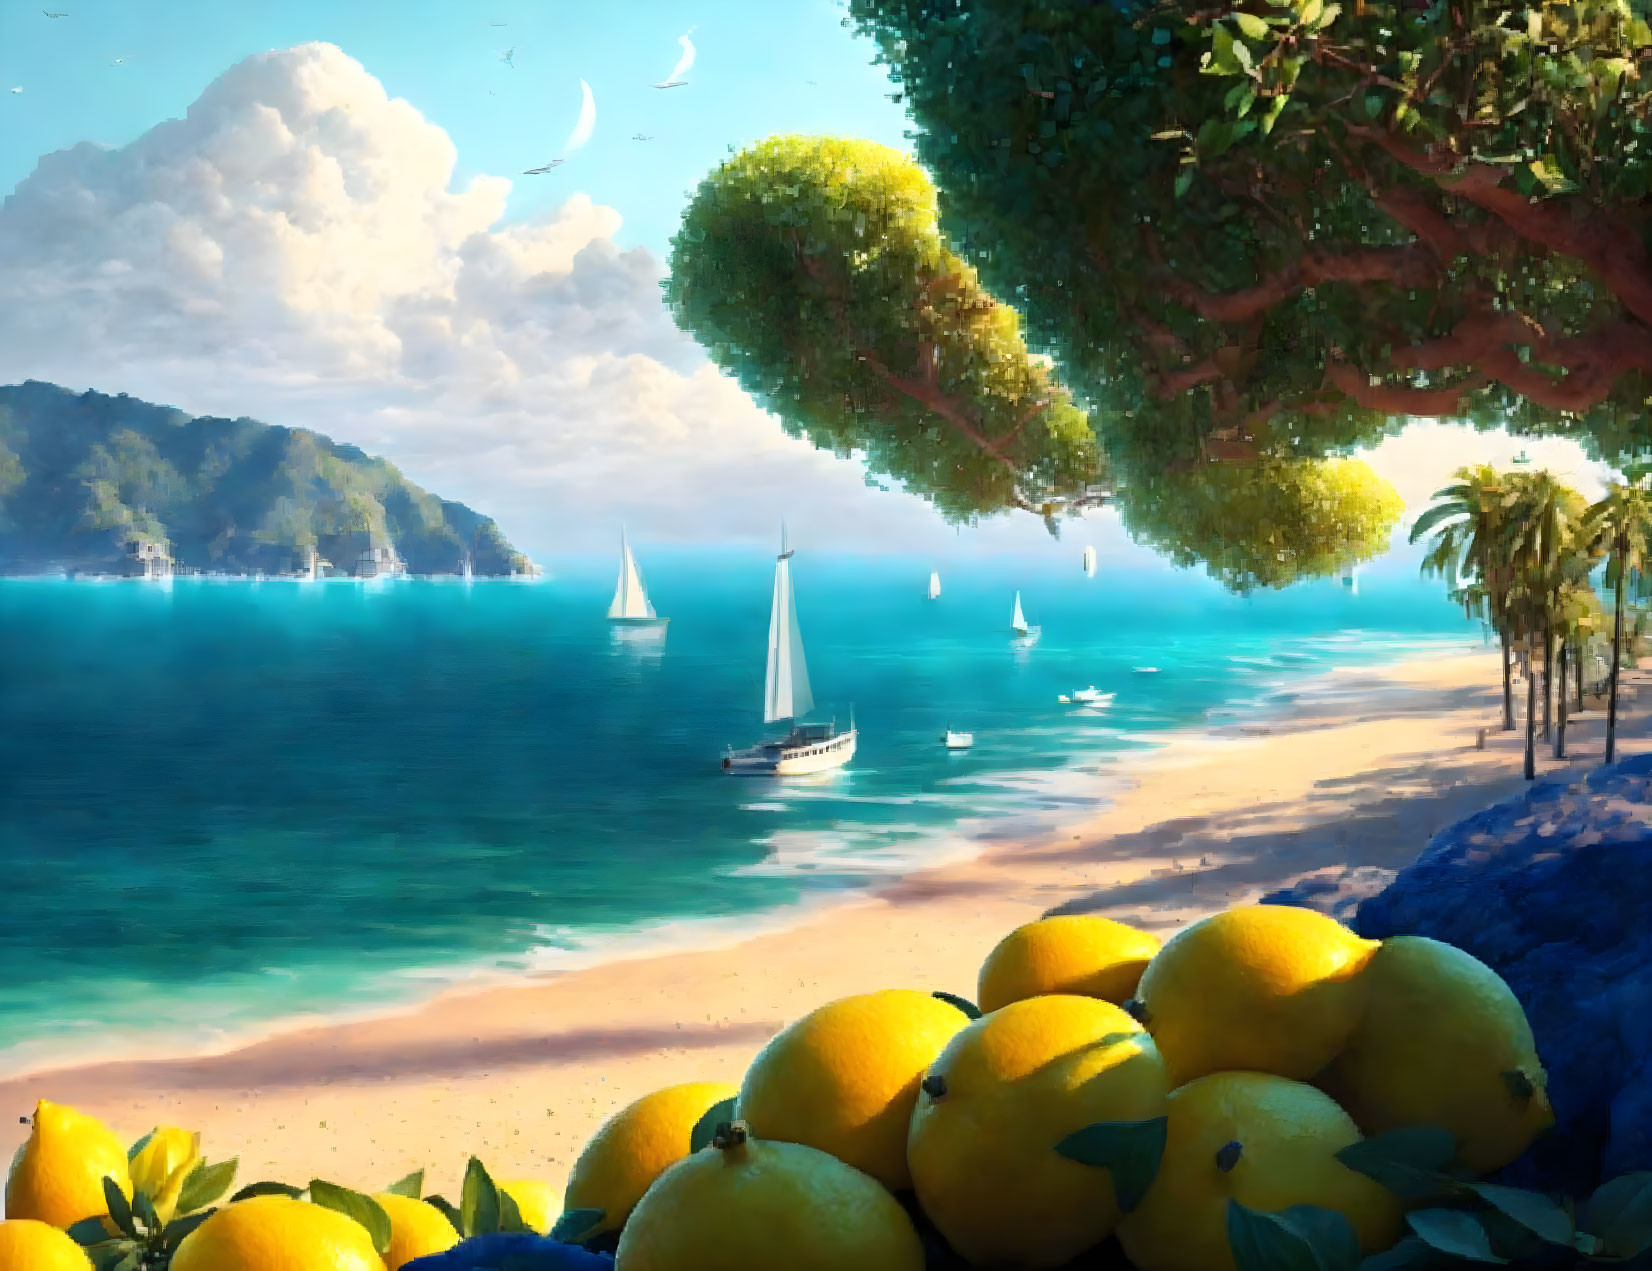 Lemon shores